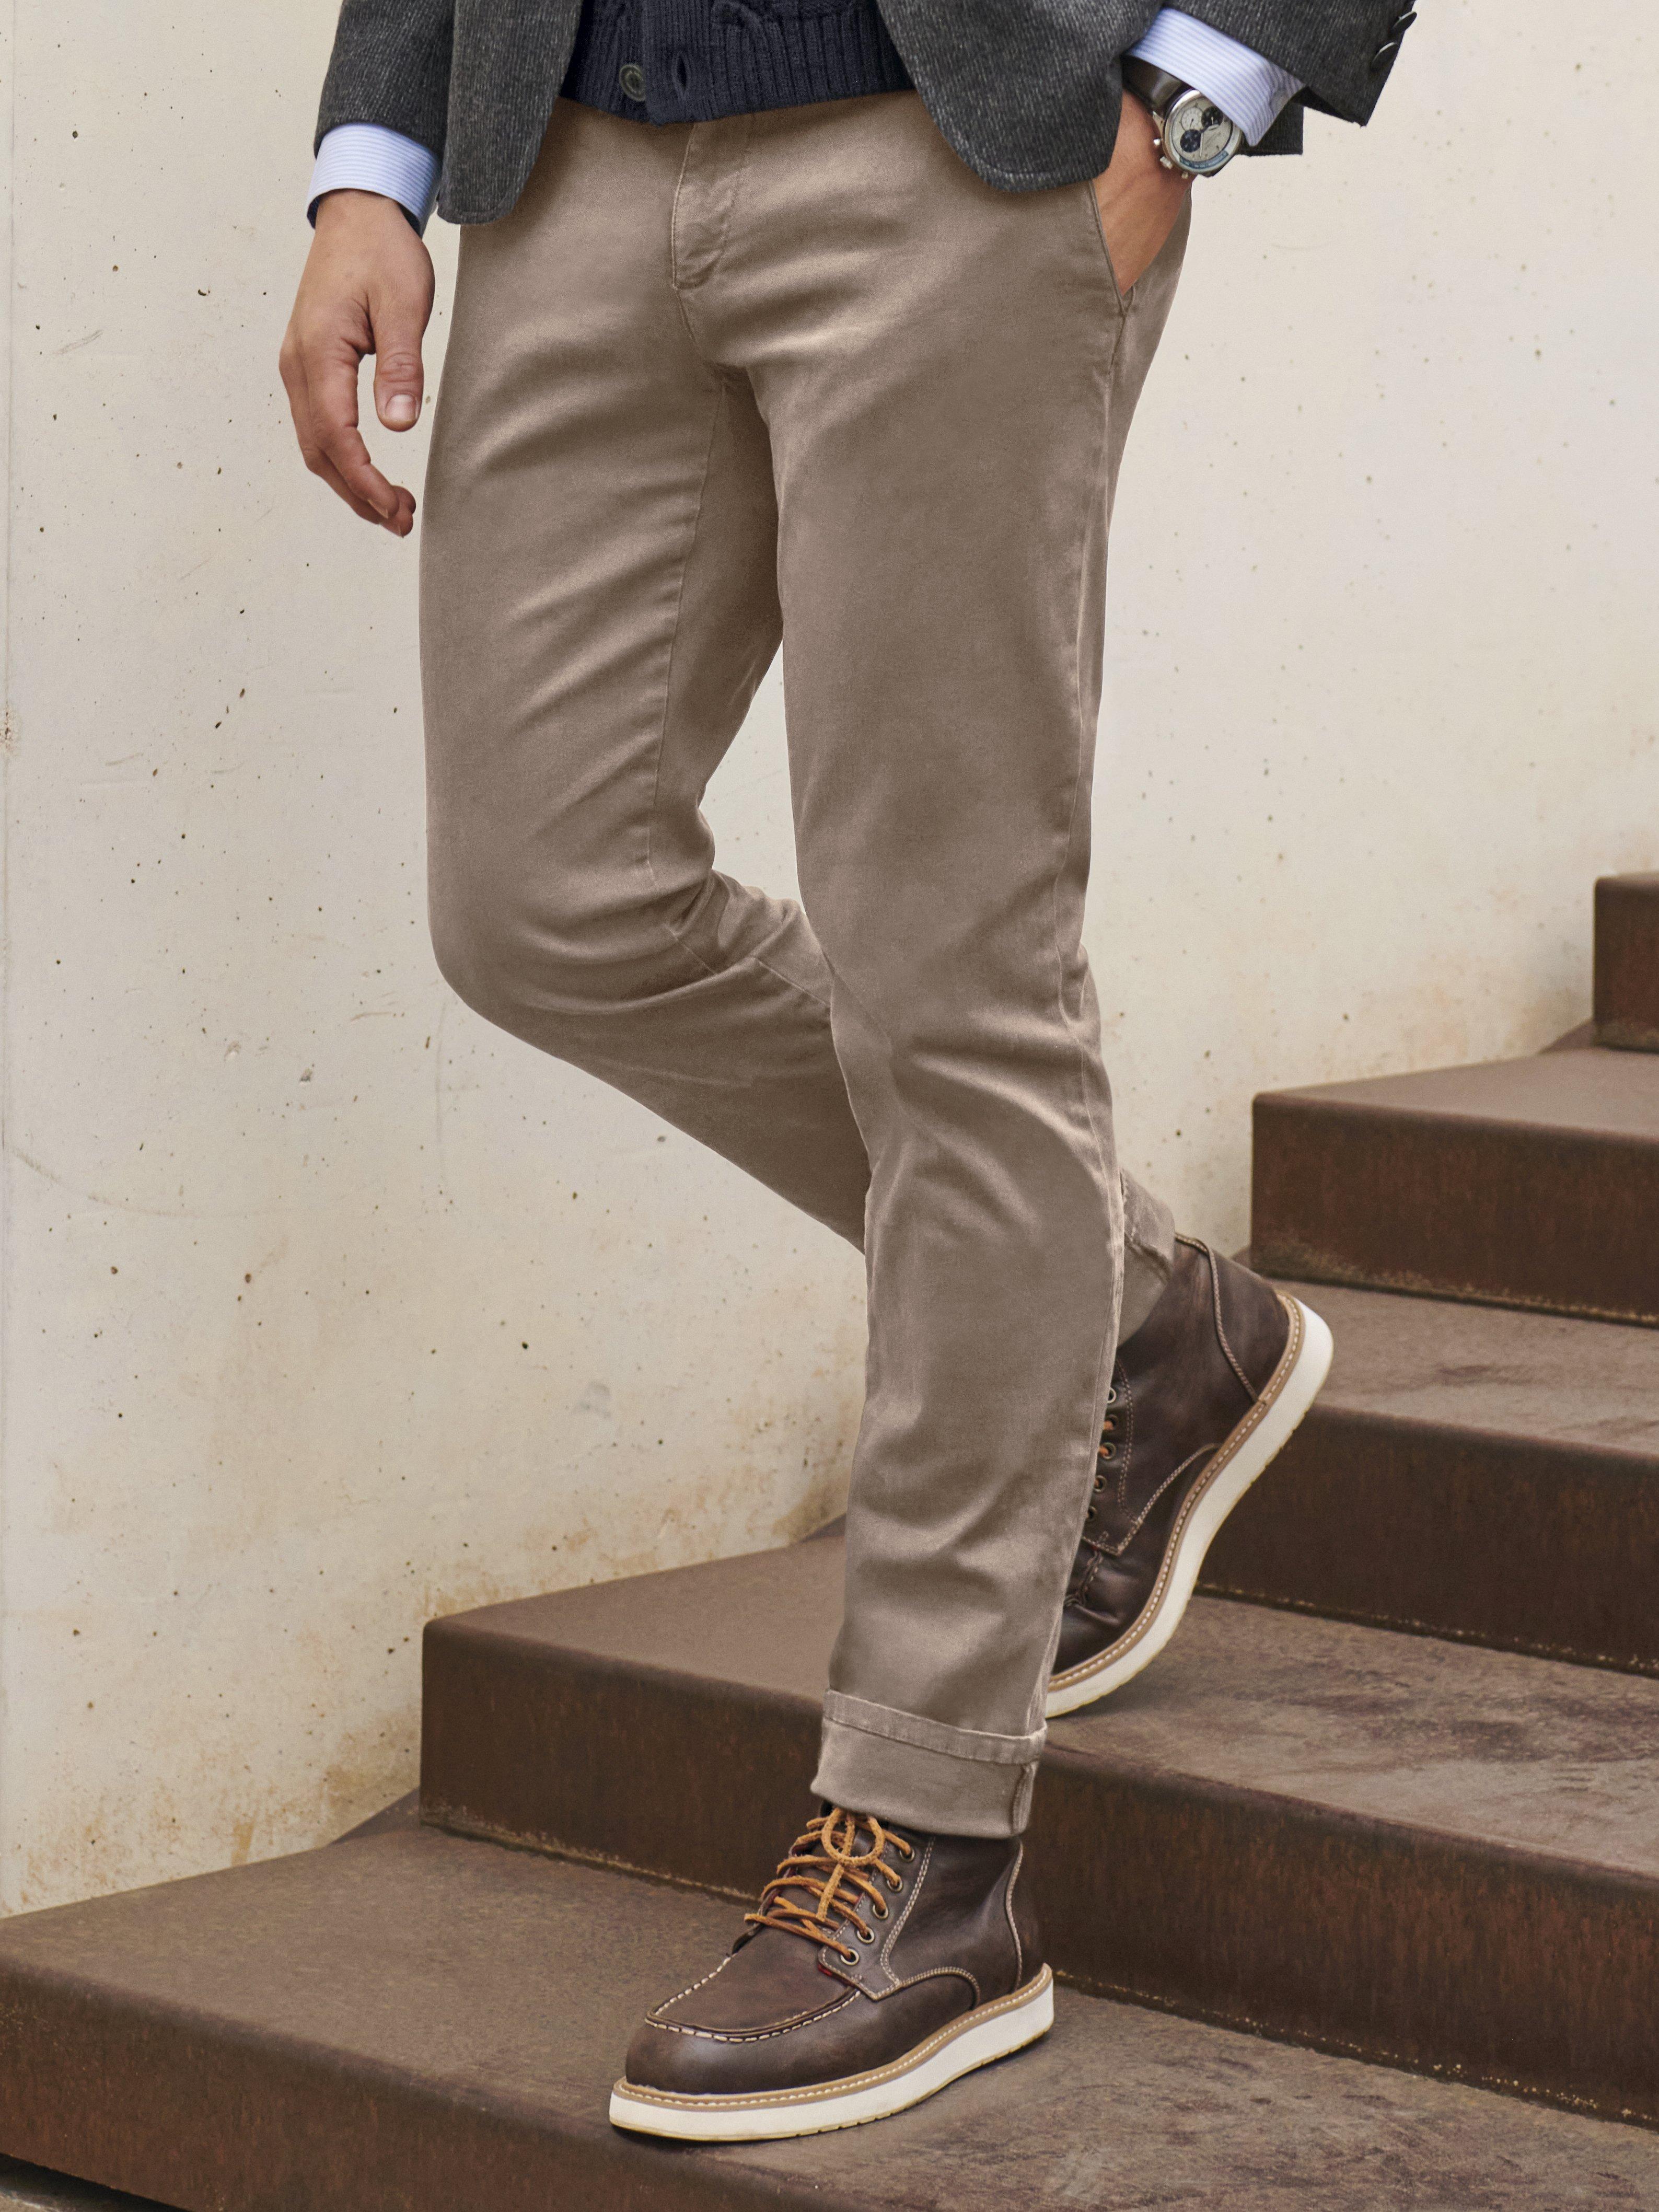 Interconnect twinkle Vær opmærksom på Alberto - Jeans-Chino model Rob Slim Fit, inch-længde 30 - Beige